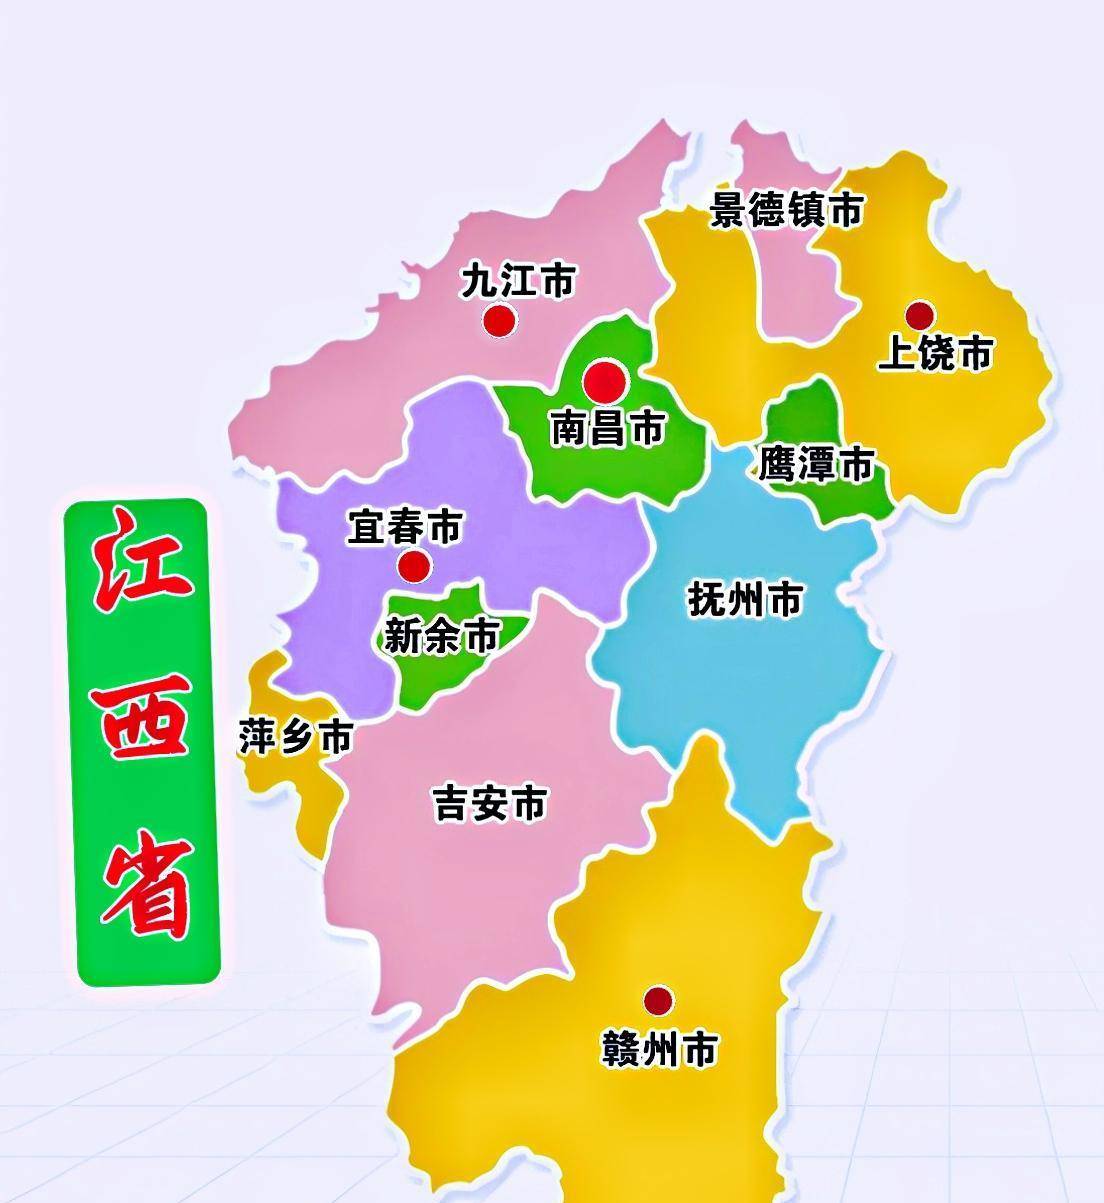 江西行政区划调整方案图片